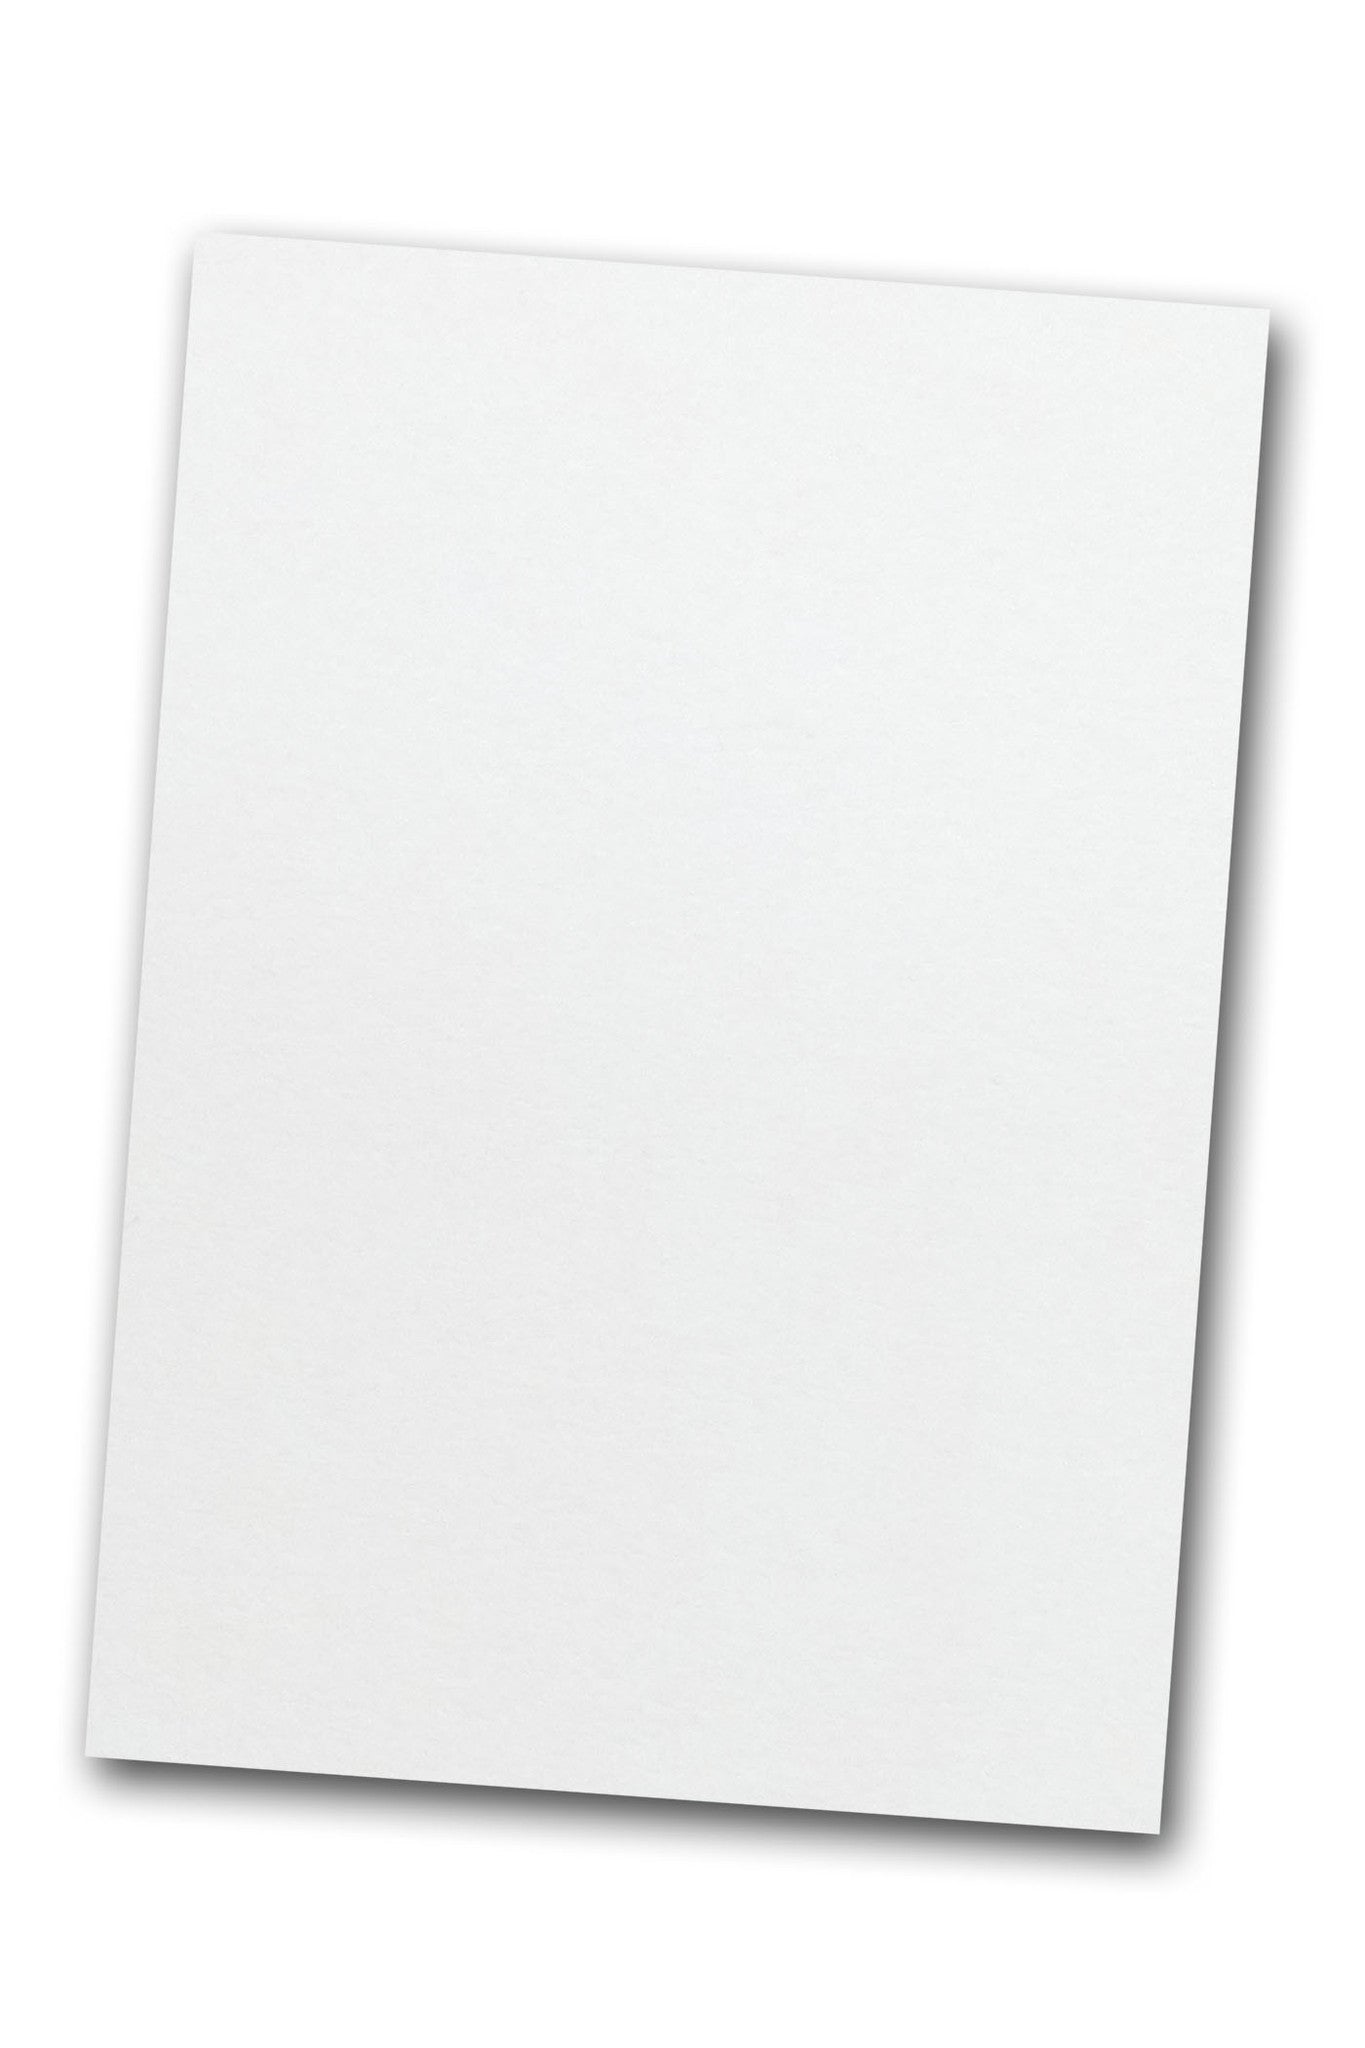 CLASSIC CREST Whitestone Card Stock - 26 x 40 in 110 lb Cover Smooth 200  per Carton